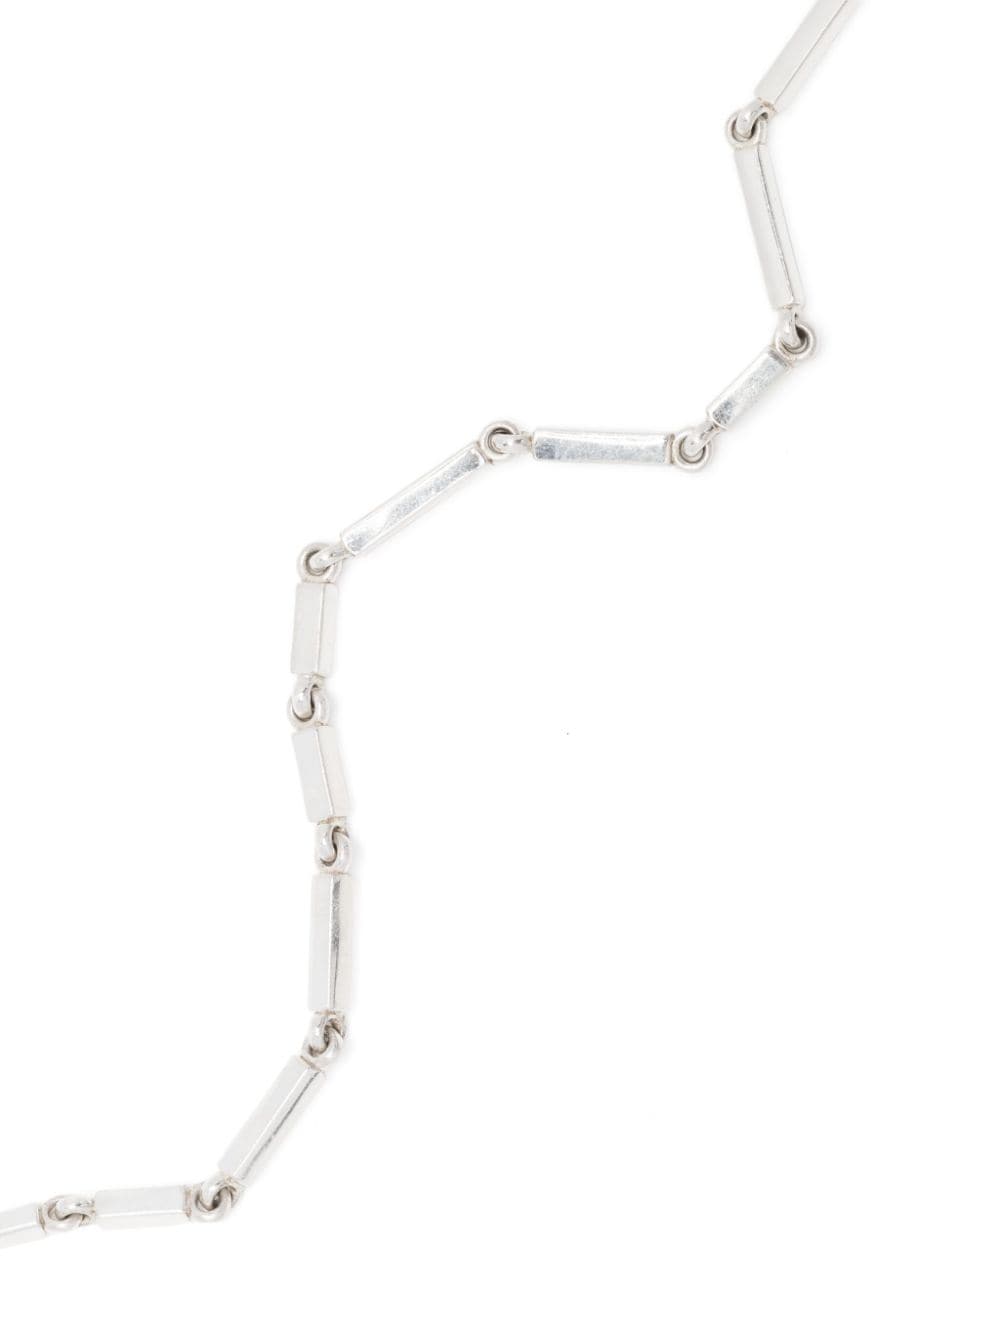 Shop Maor Cuadrangular Silver Necklace